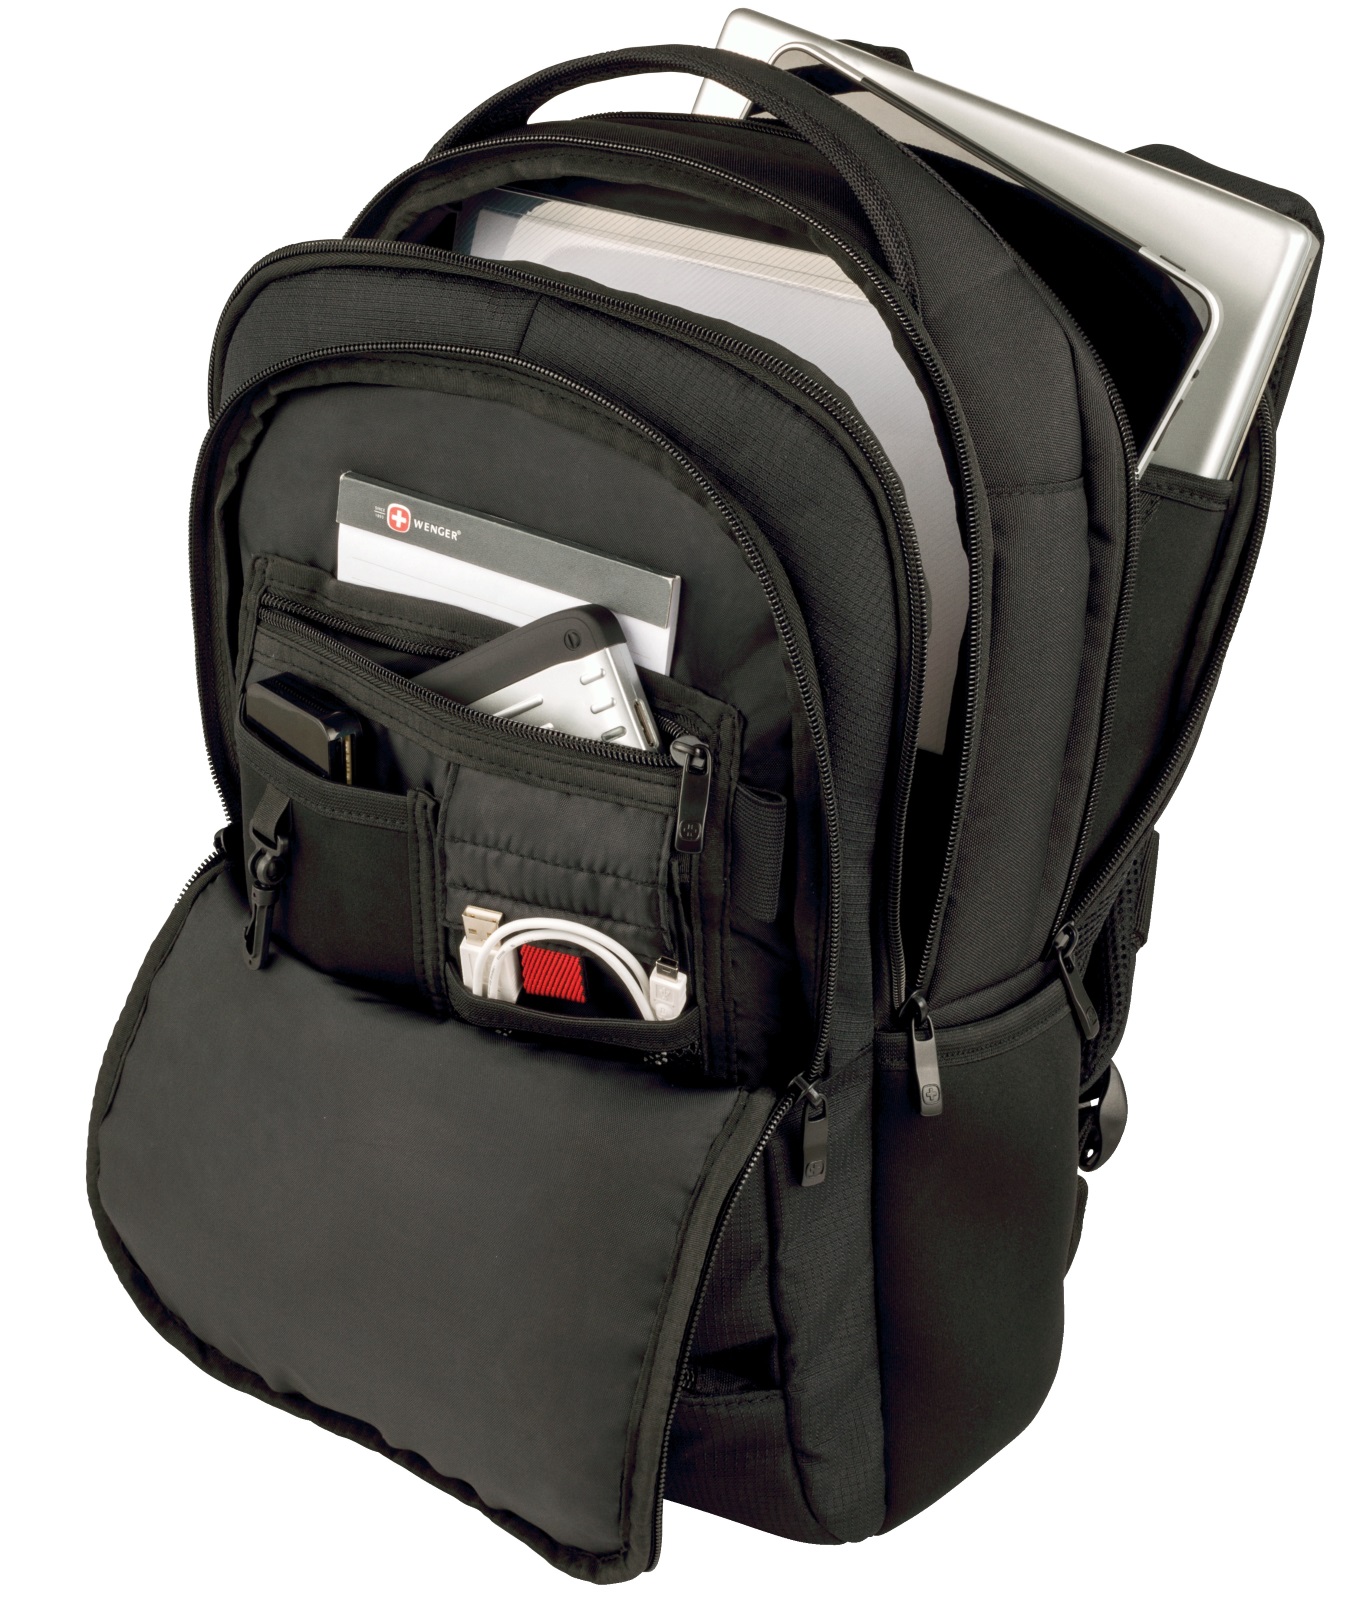 Wenger Surge 15.6-inch Laptop Backpack with tablet/eReader Pocket